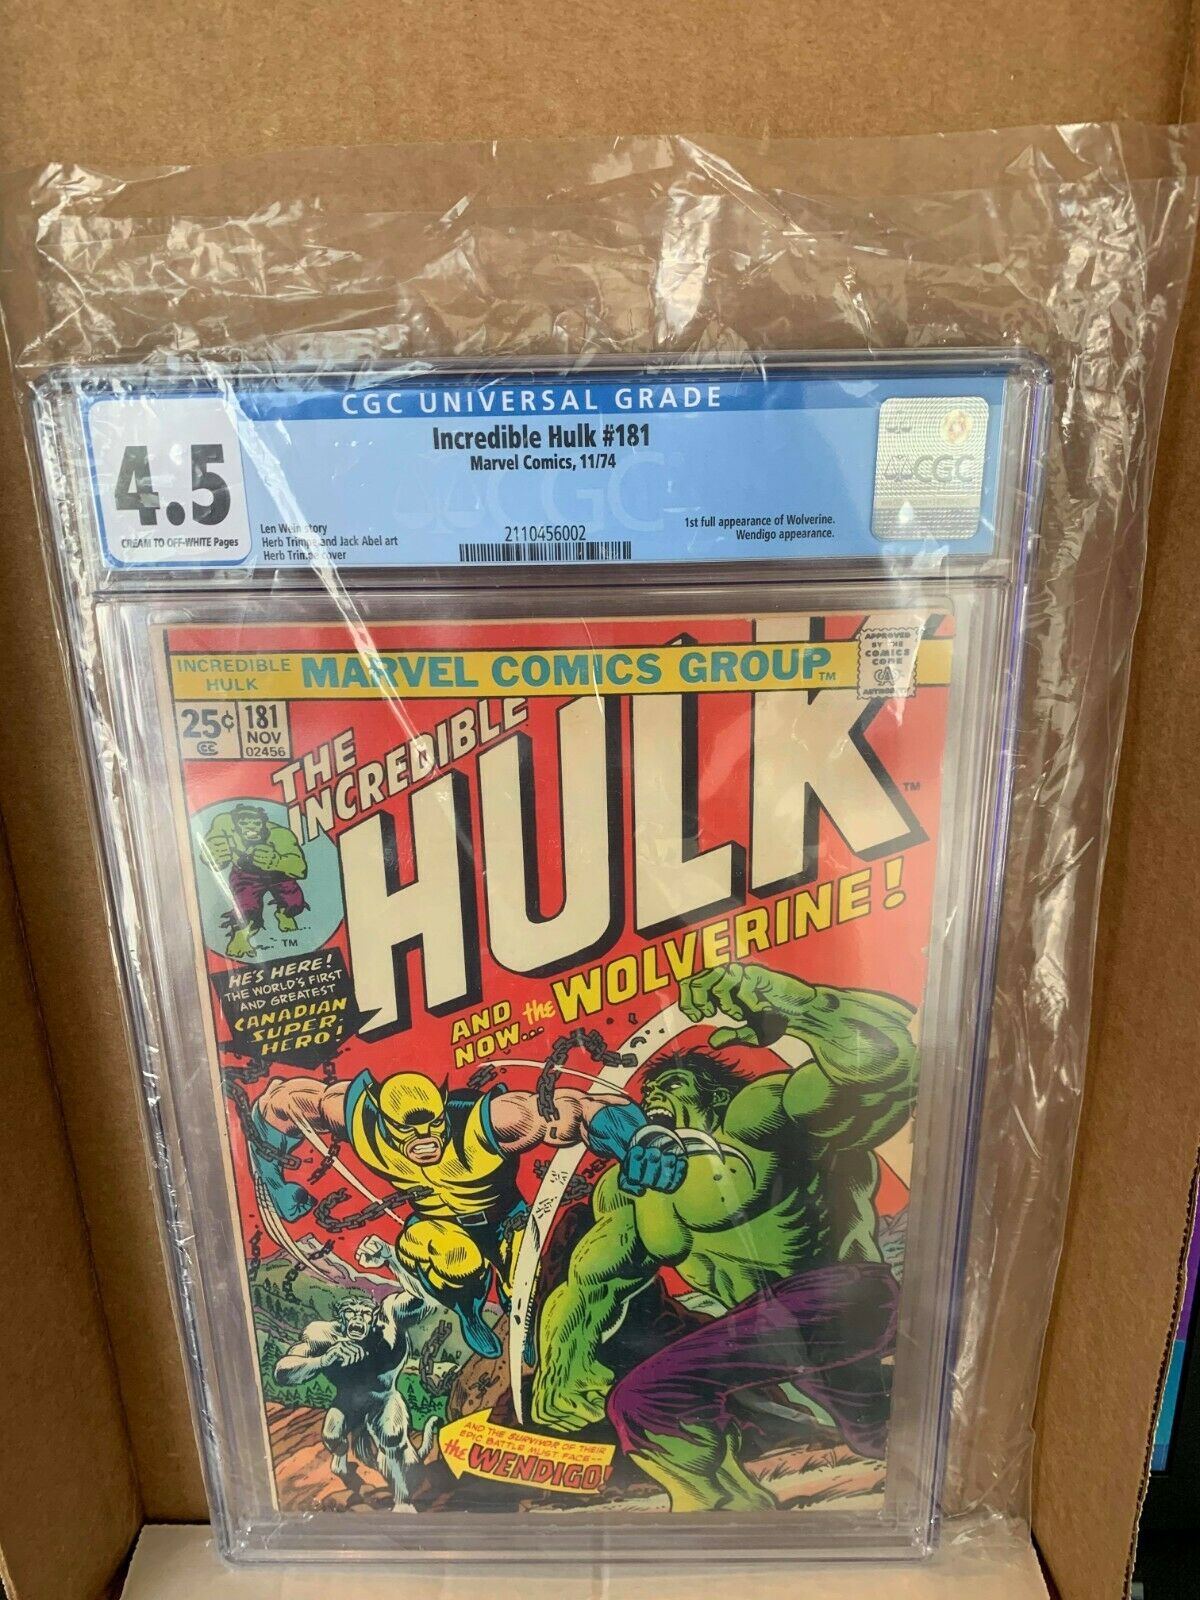 Incredible Hulk 181 Vol 1 CGC 45 Grade 1st App of Wolverine Comic BOOK RARE